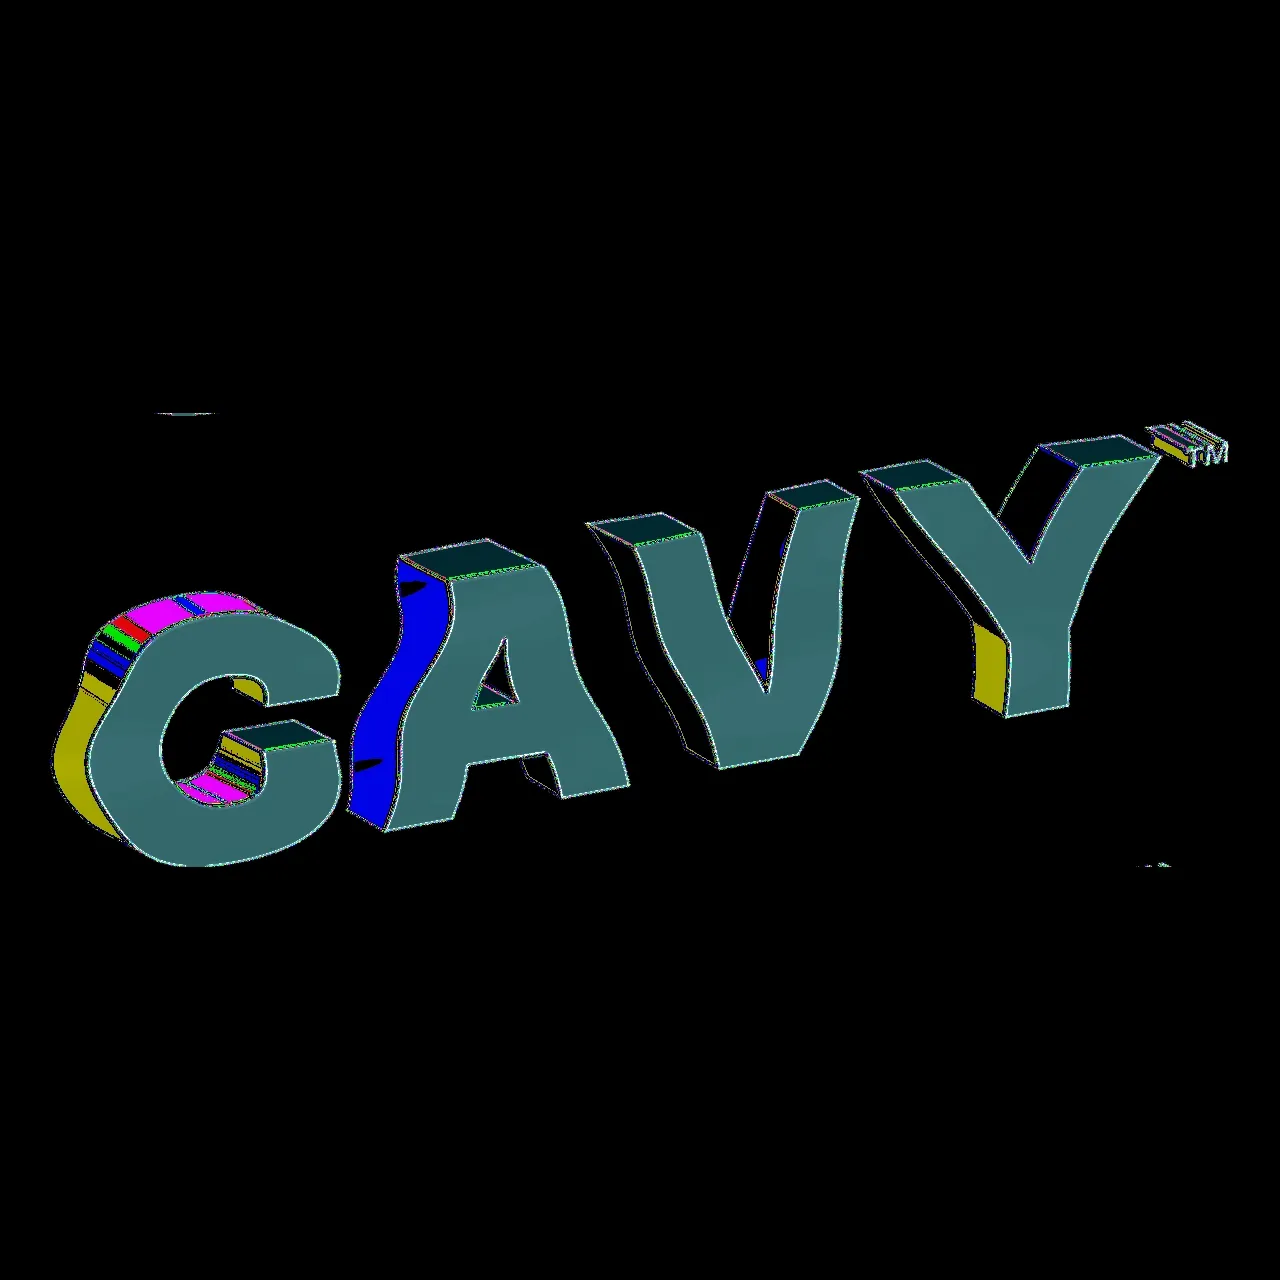 CAVY